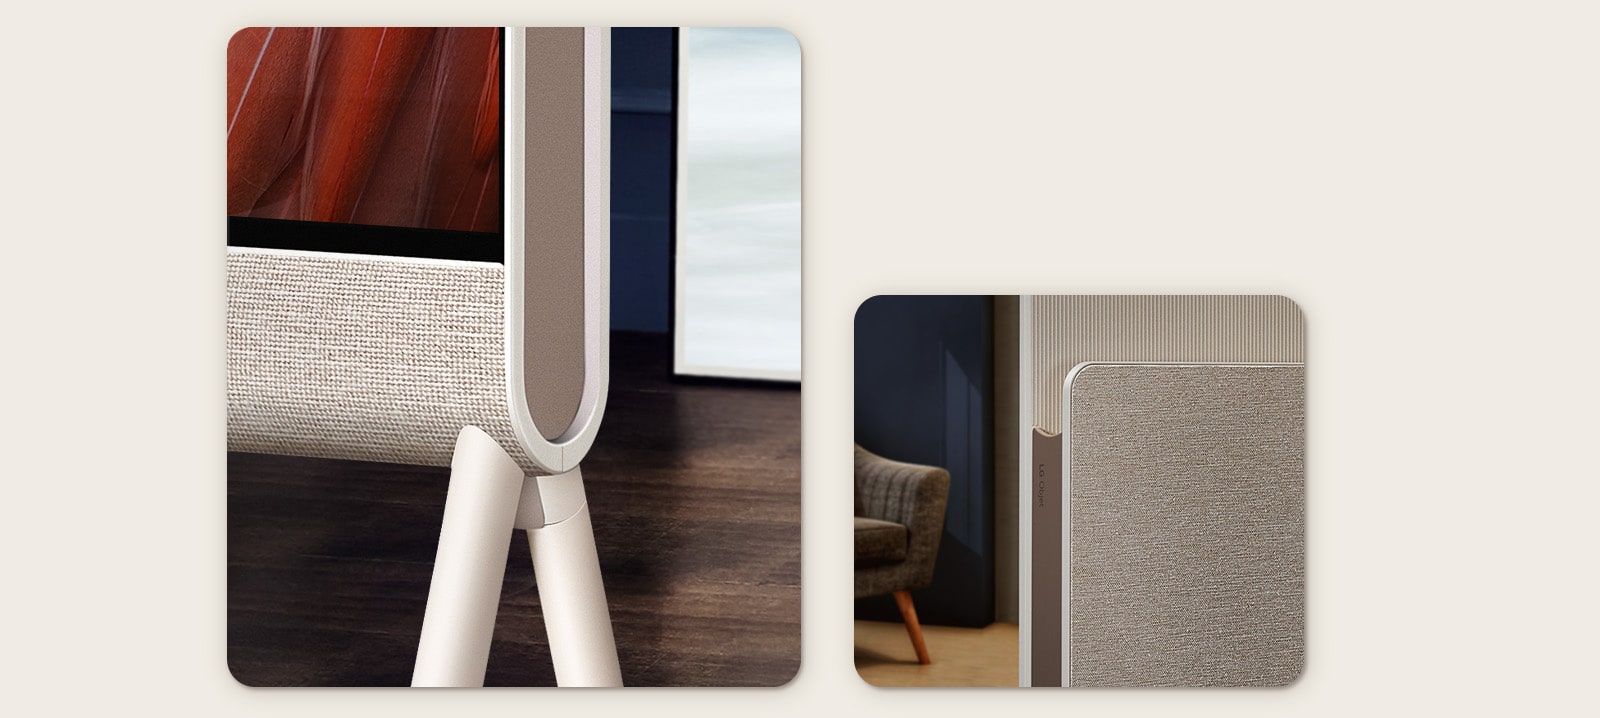 Cận cảnh góc dưới LG OLED Posé nhìn từ phía trước, tập trung vào mặt vải, trong nền là sàn gỗ.   Cận cảnh mặt vải của kệ phương tiện của LG OLED Posé và logo LG Objet với một chiếc ghế bành ở phía sau.